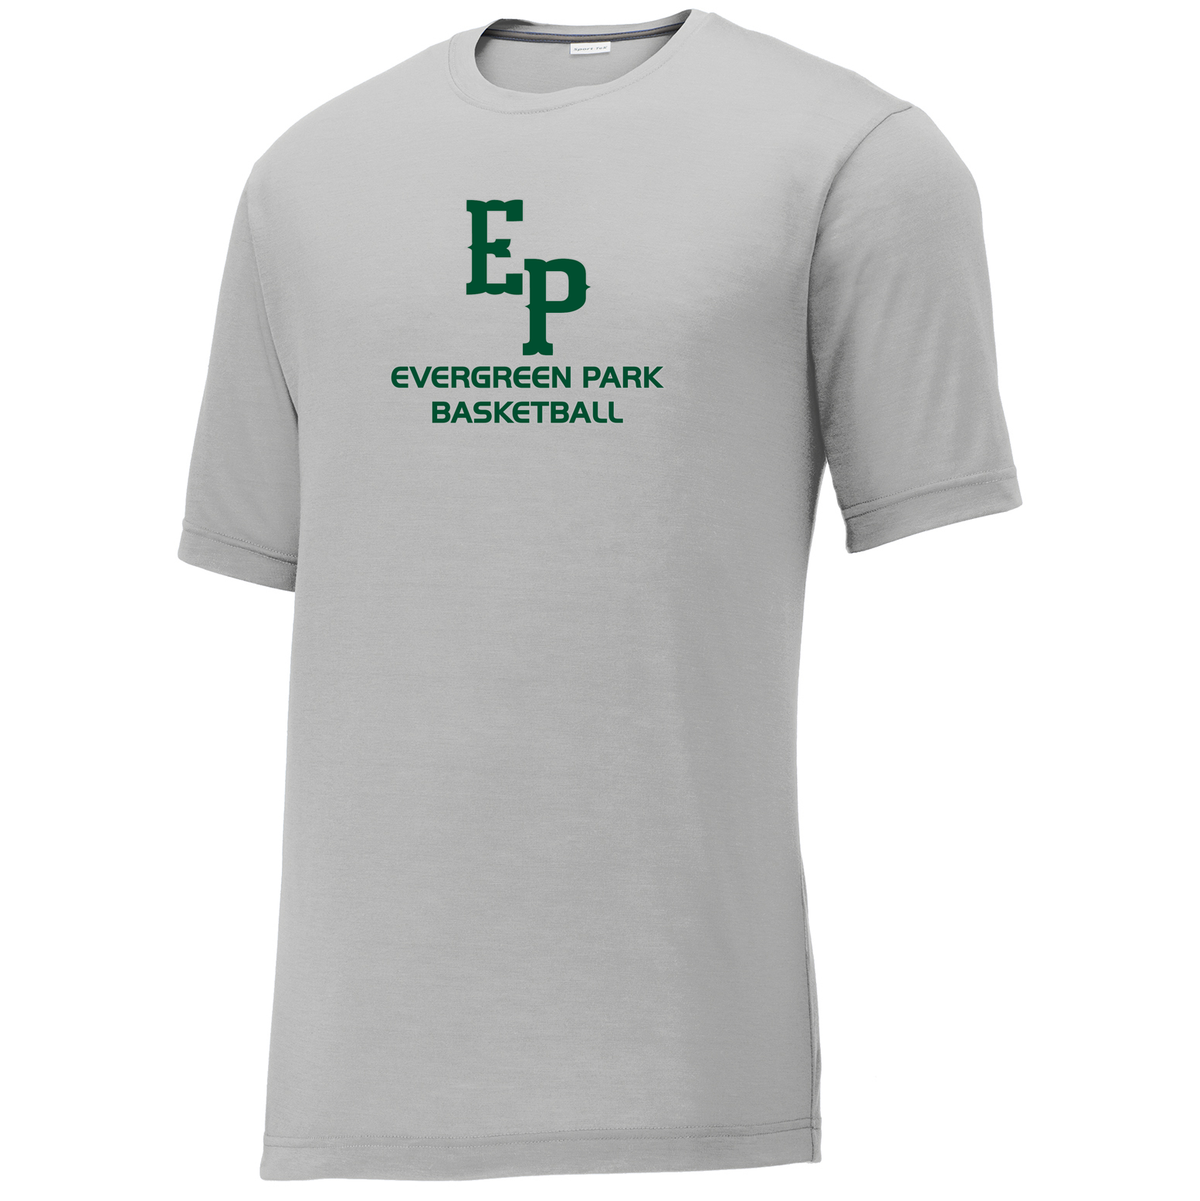 Evergreen Park Basketball CottonTouch Performance T-Shirt